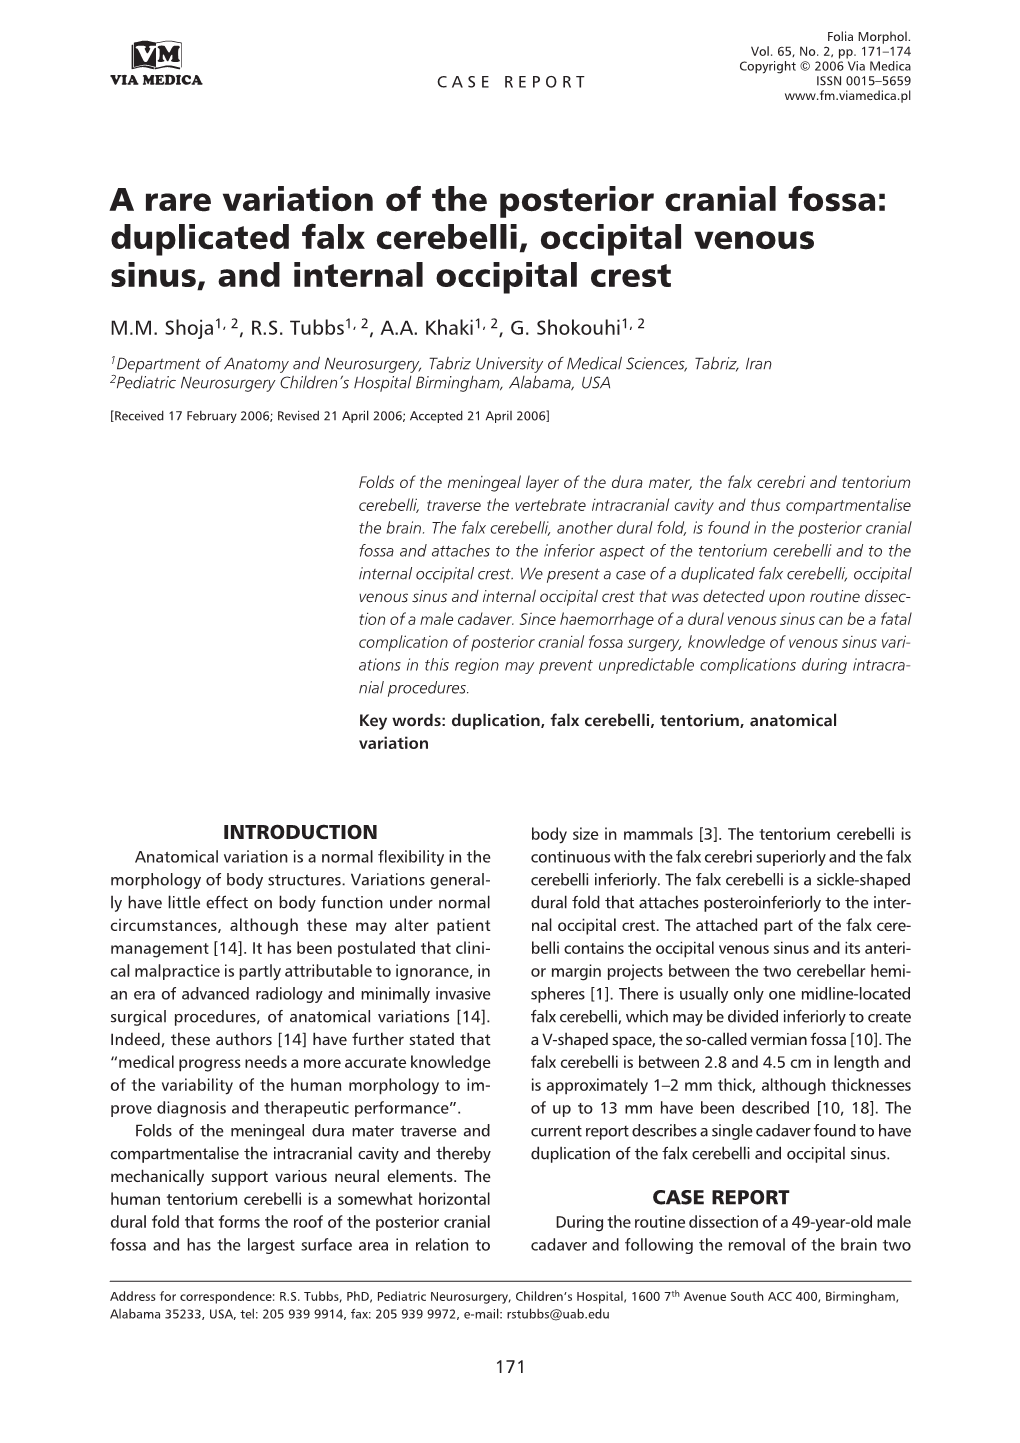 Duplicated Falx Cerebelli, Occipital Venous Sinus, and Internal Occipital Crest